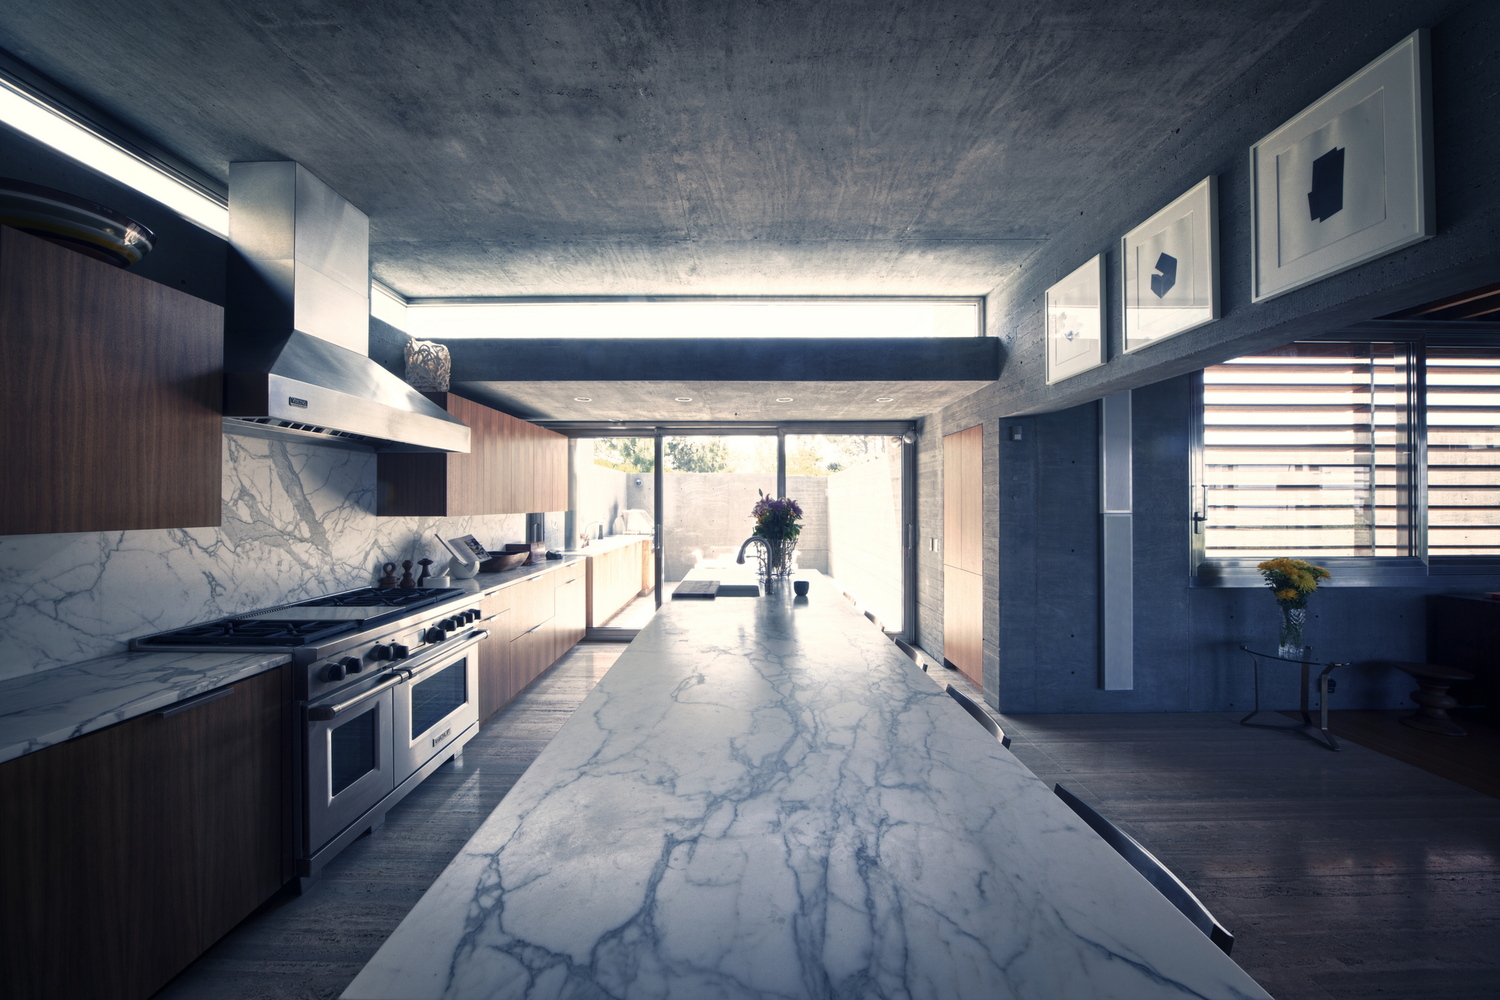 General 1500x1000 modern interior interior design kitchen